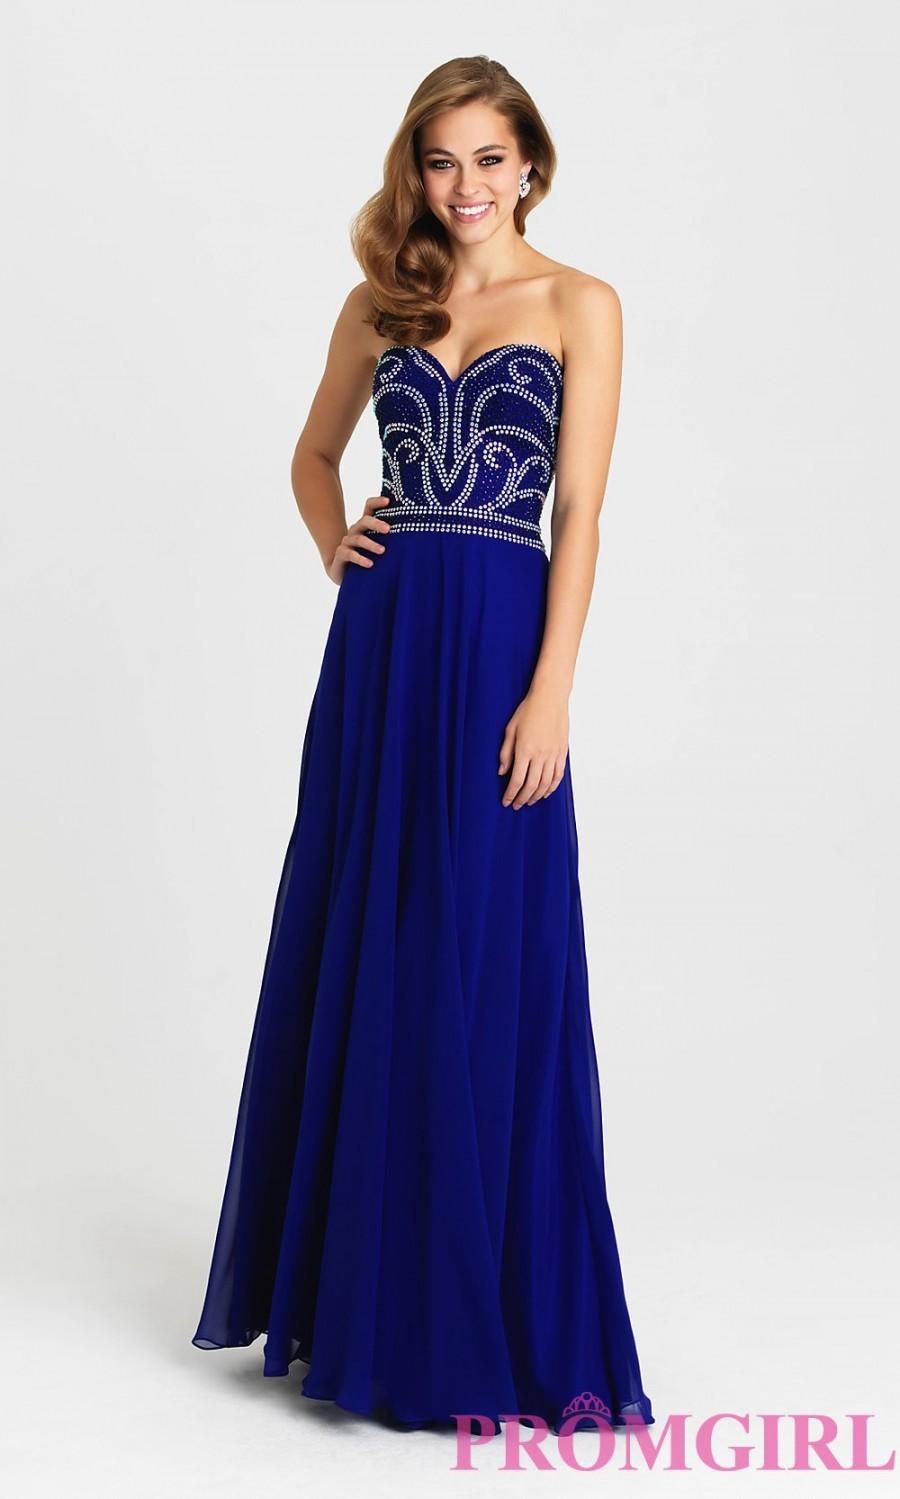 زفاف - Long Madison James Strapless Sweetheart Prom Dress - Discount Evening Dresses 